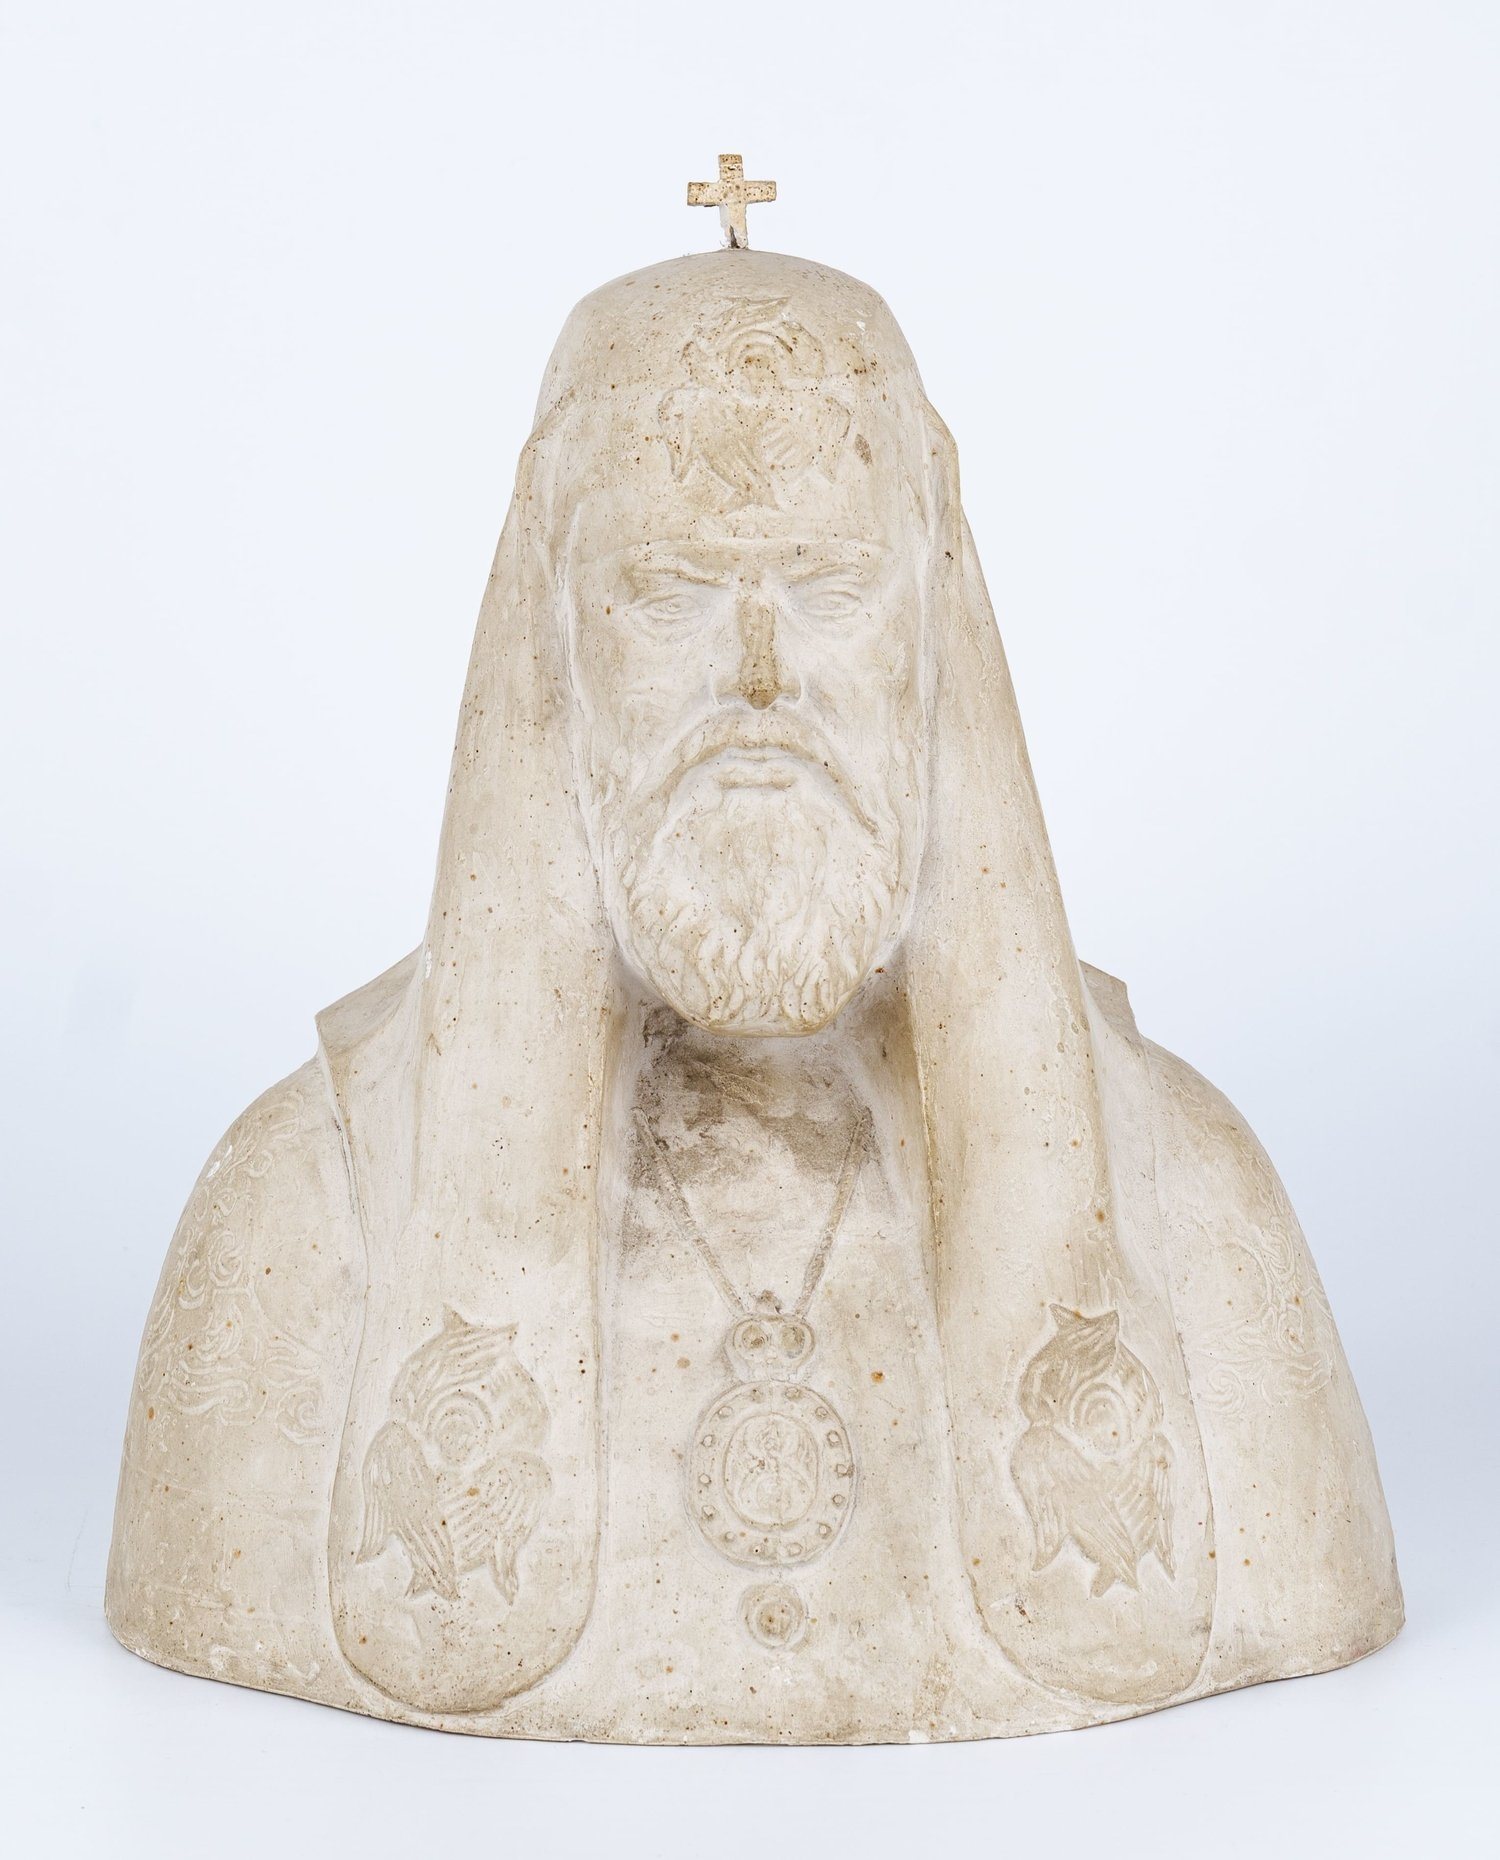 Скульптура «Патриарх Пимен». 1970-е - 1980-е годы. Скульптор Б.А. Дубрович.